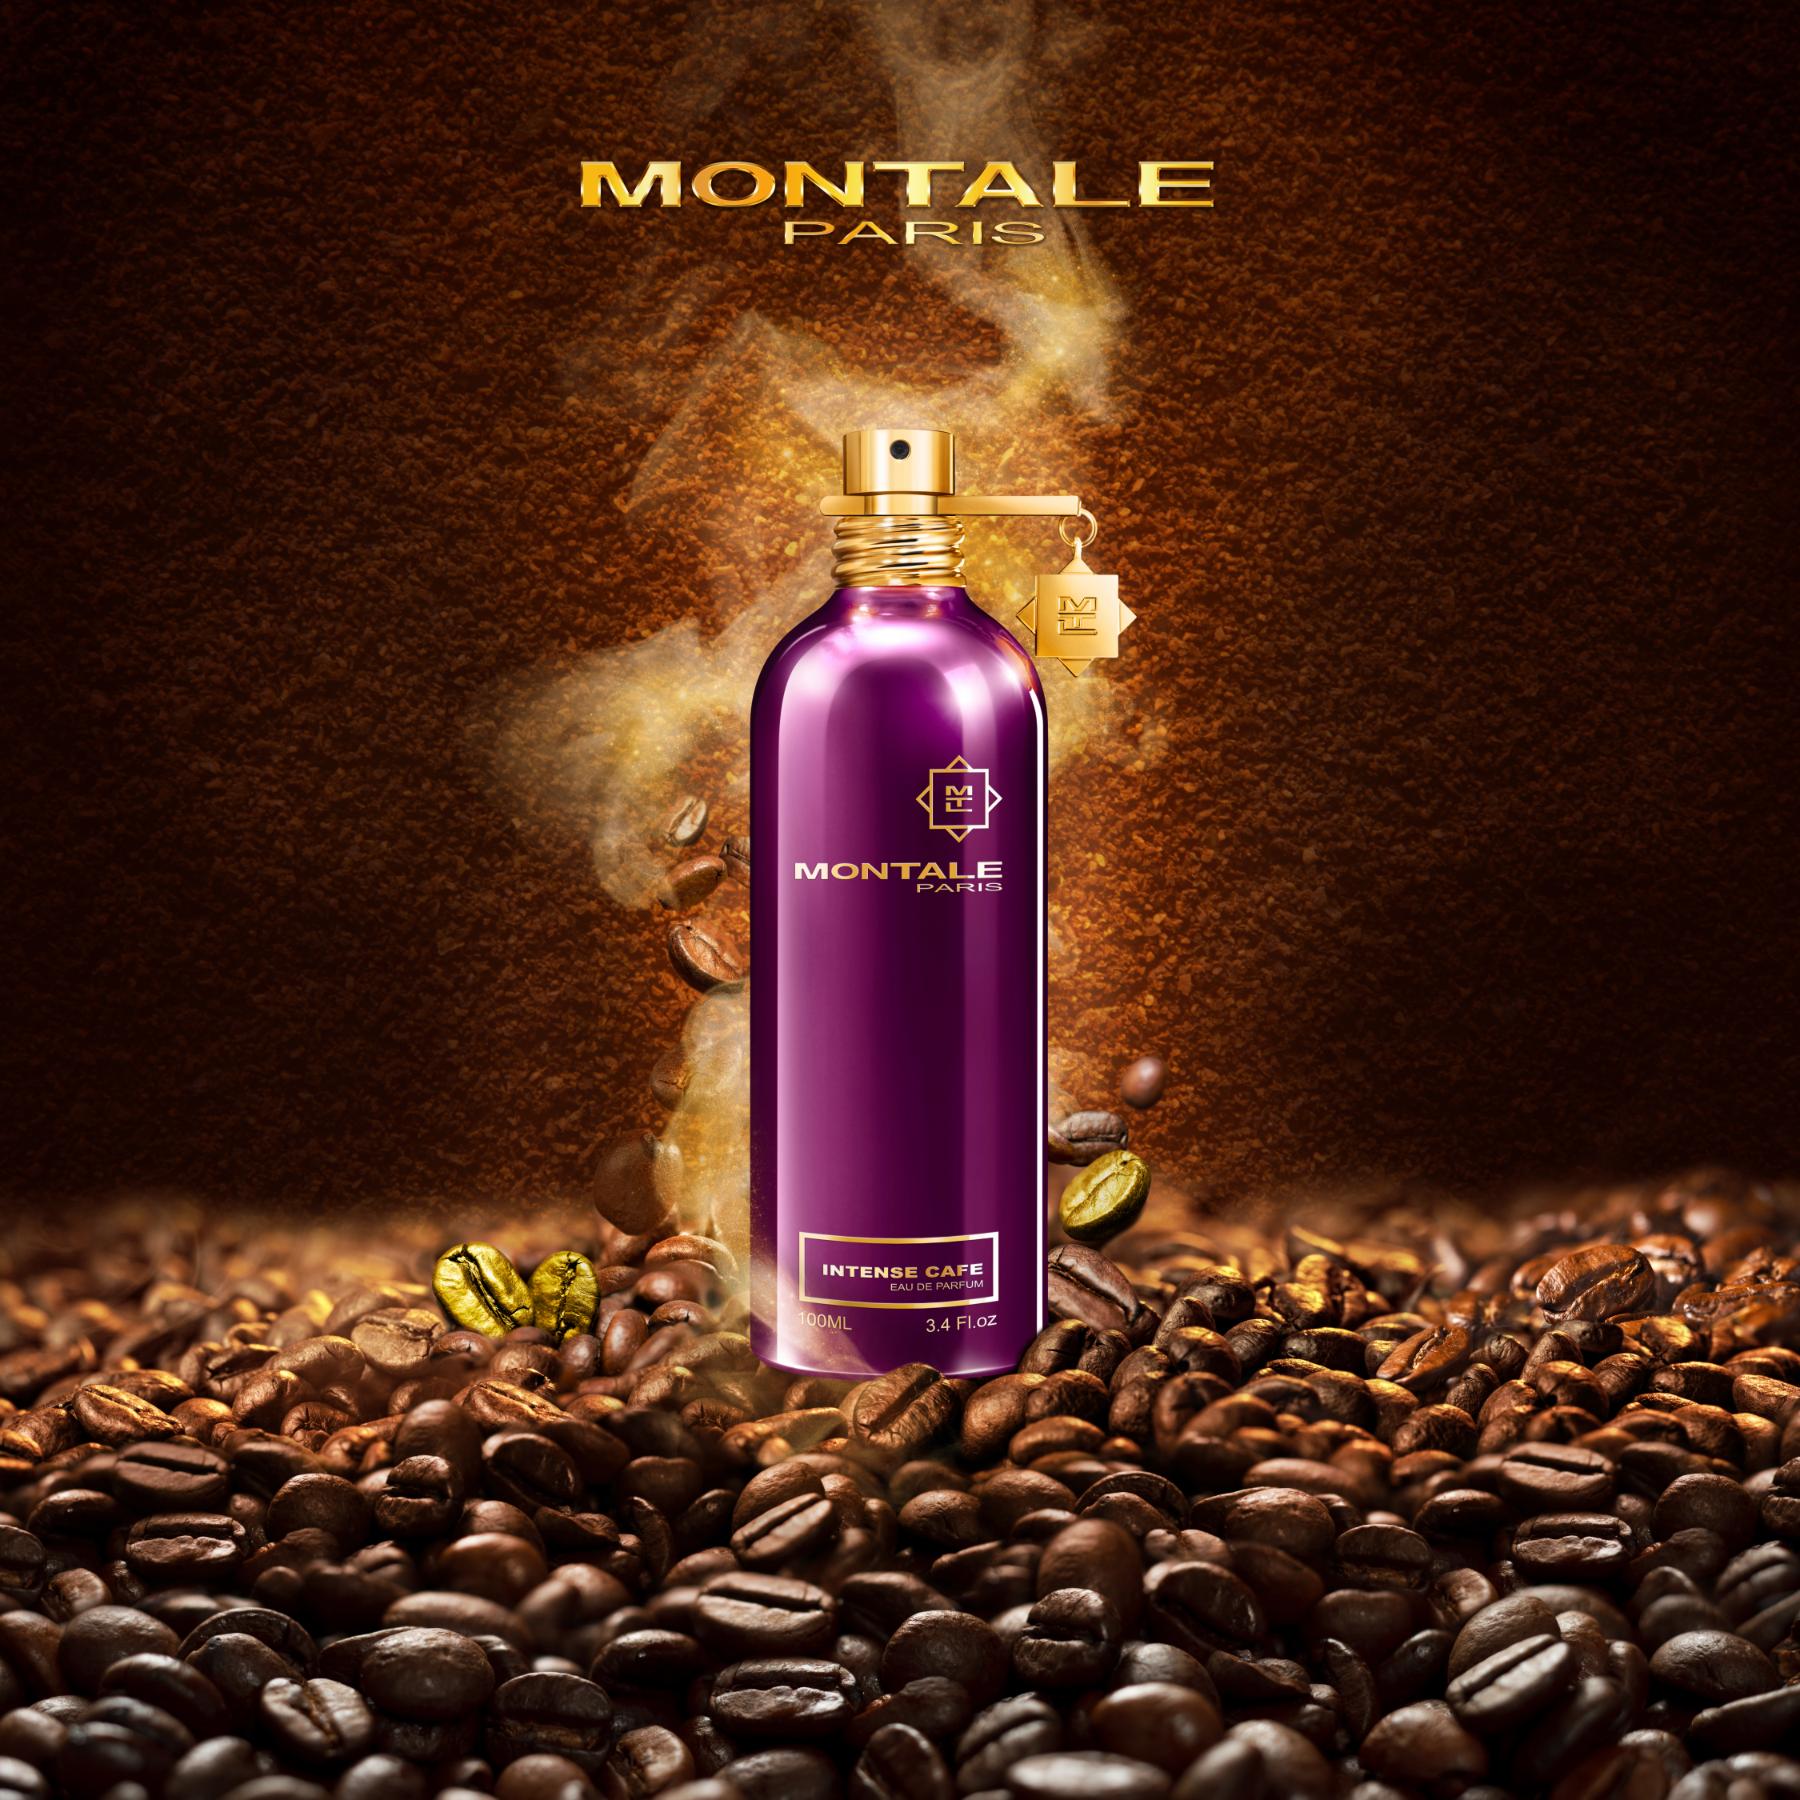 Montale Paris Intense Café 1 Chìm đắm trong mùi hương say mê của cà phê với Montale Paris Intense Café